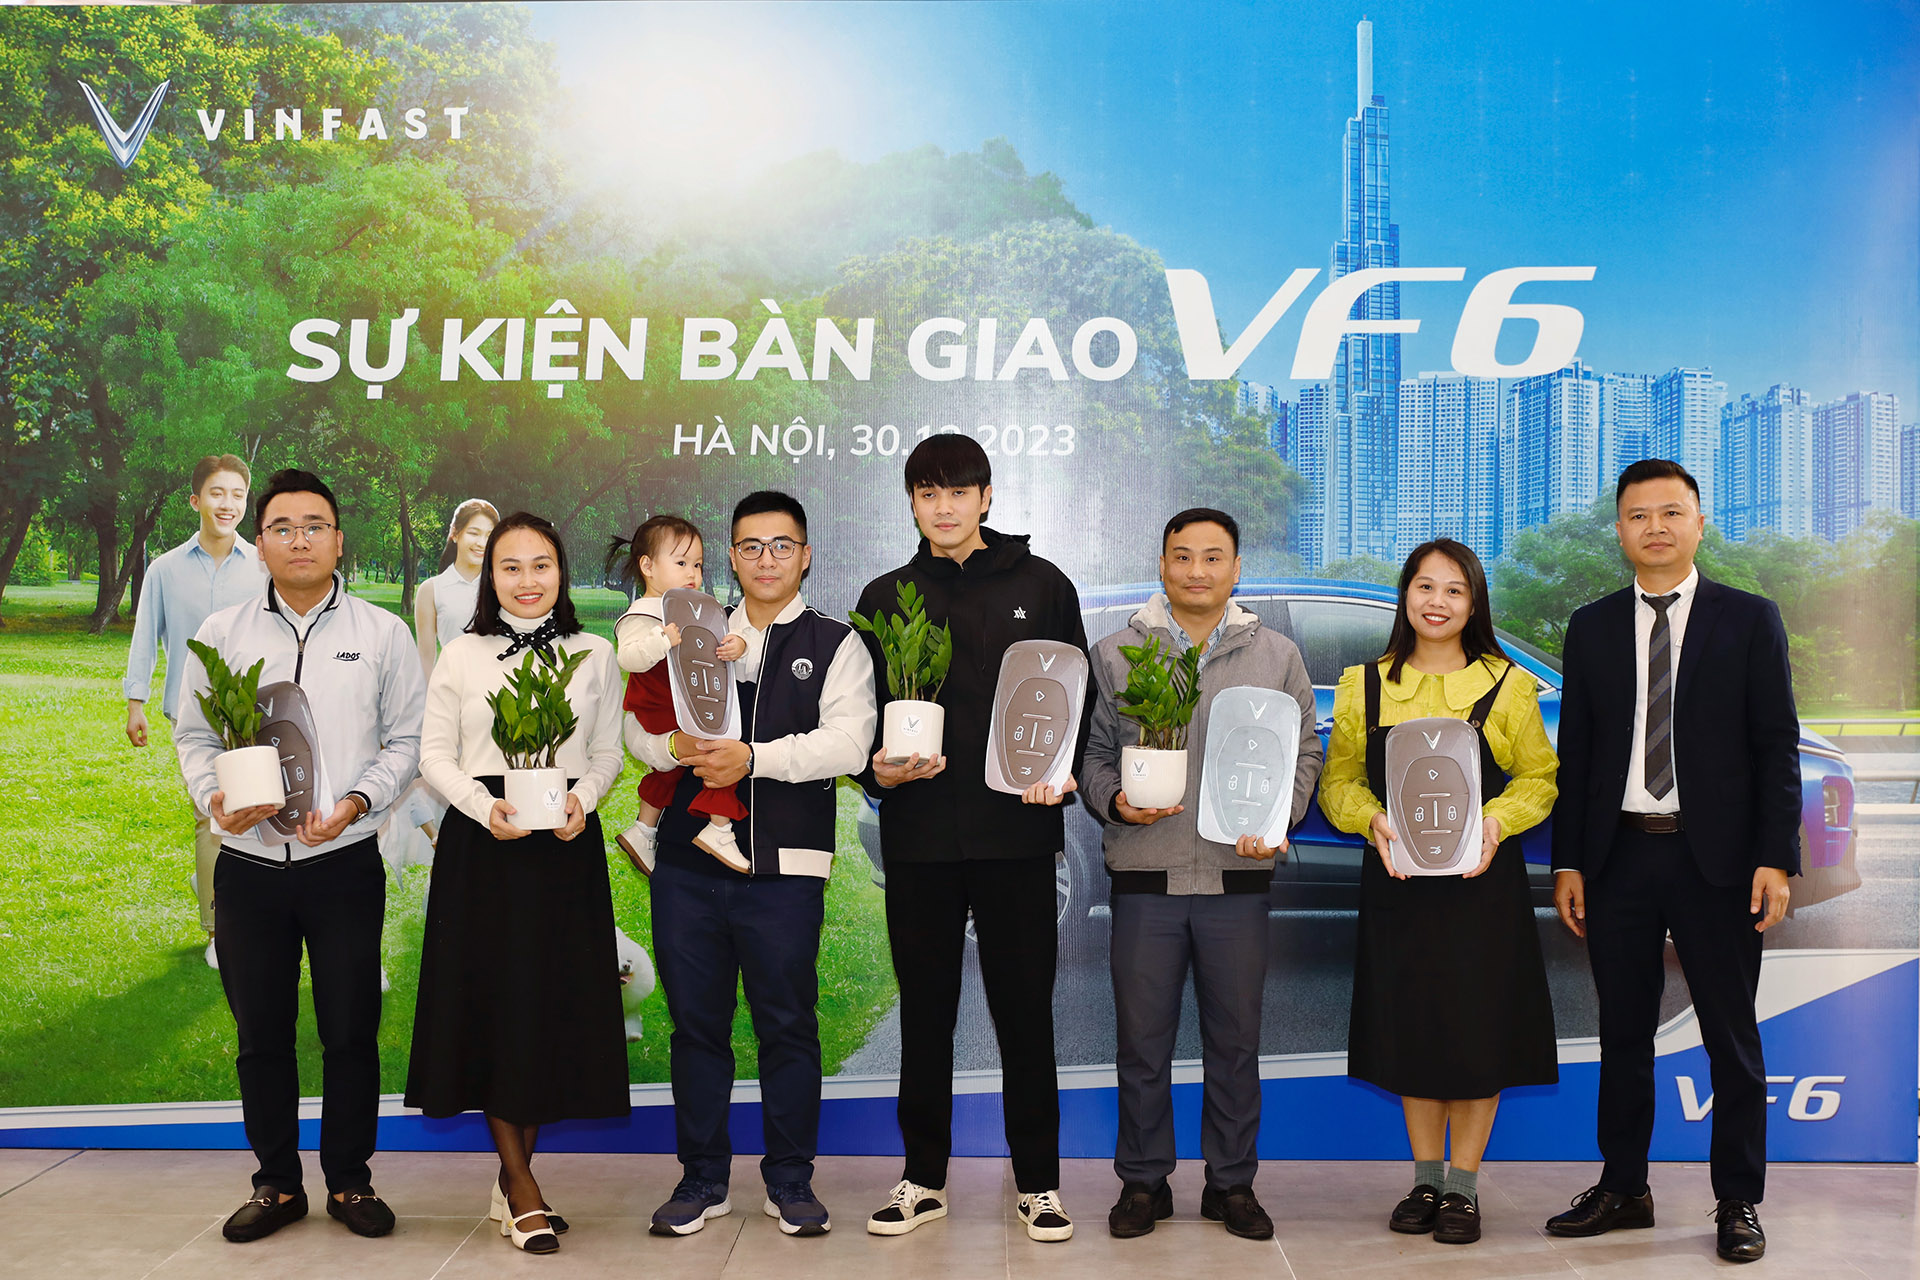 Đại diện VinFast tặng quà cho những khách hàng đầu tiên nhận VF 6 tại Hà Nội